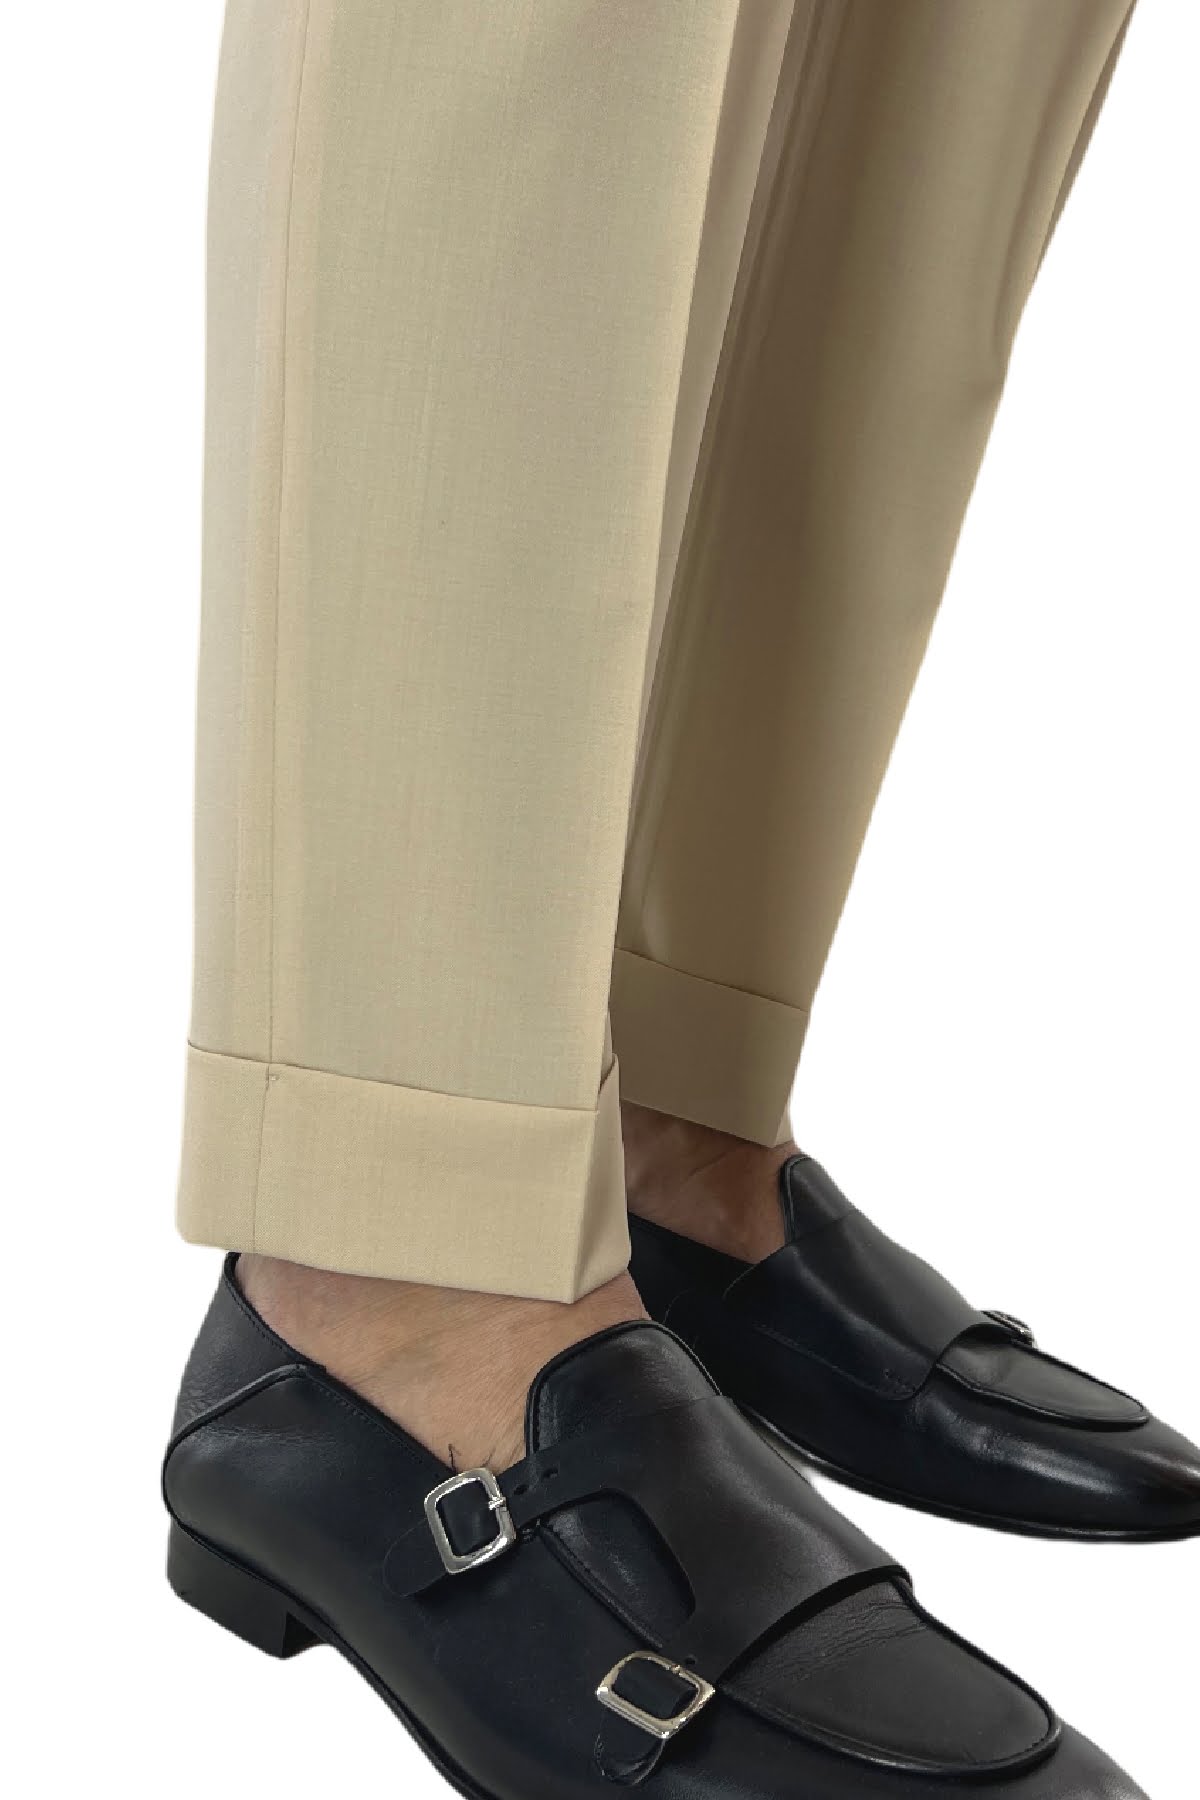 Pantalone uomo beige chiaro in fresco lana 100's Holland & Sherry vita alta con pinces fibbie laterali e risvolto 4cm